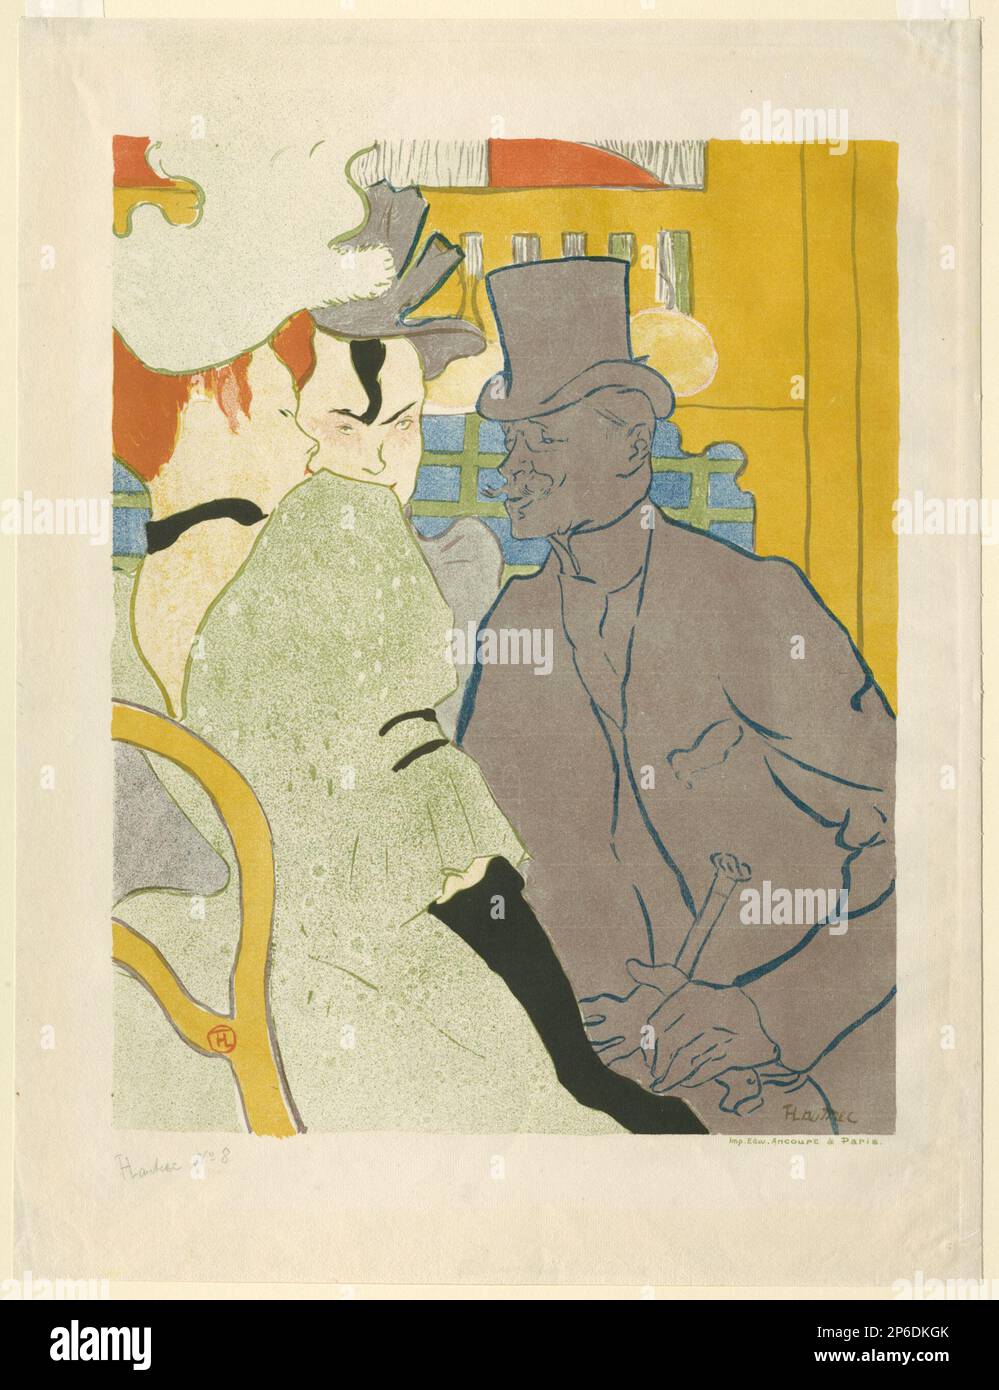 Henri de Toulouse-Lautrec, l'Anglais au Moulin Rouge, 1892, lithographie imprimée en vert, gris, bleu, orange rouge, jaune, et noir sur papier crème. Banque D'Images